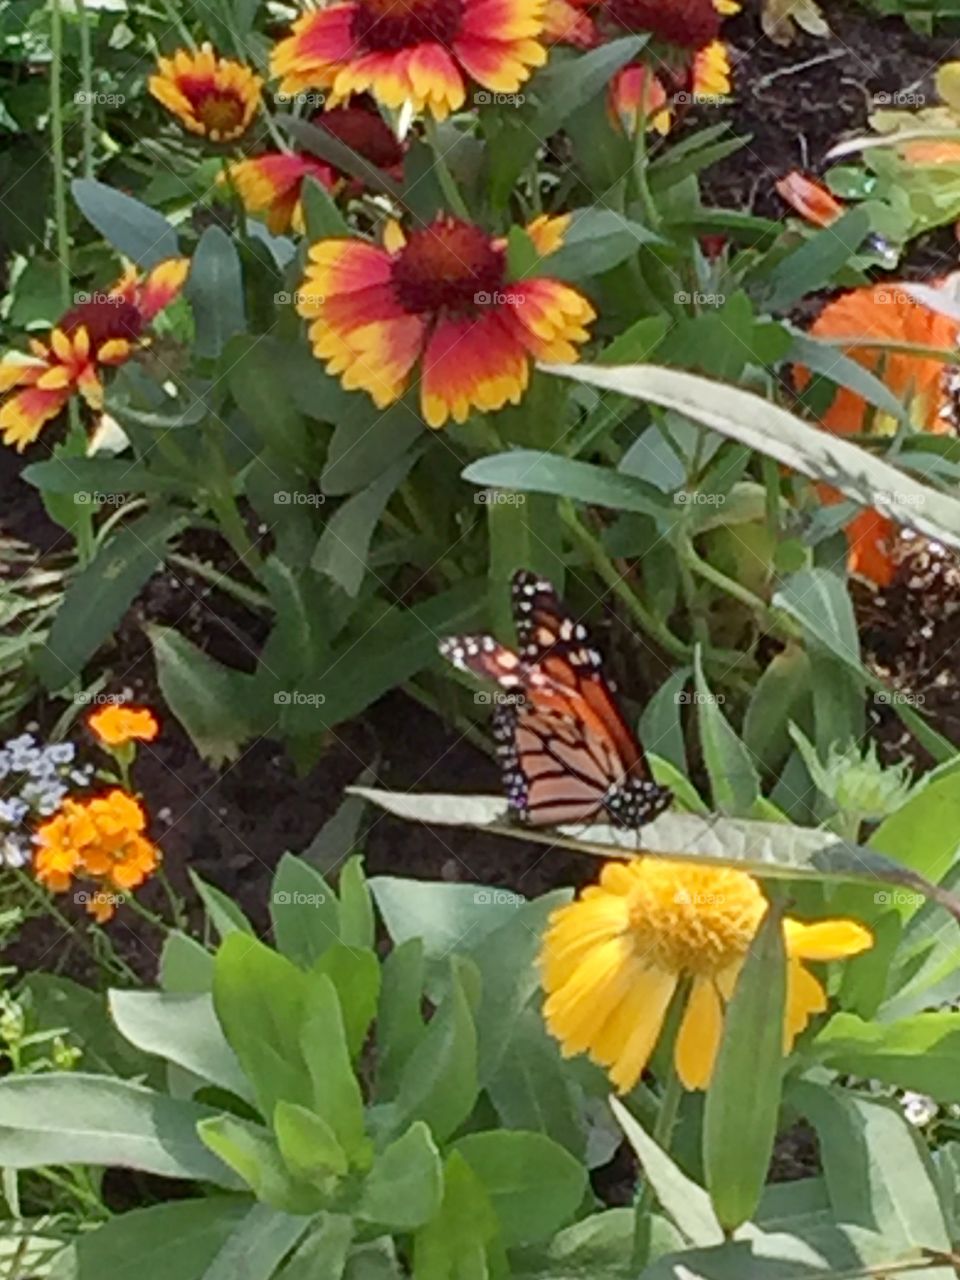 Butterfly in Garden